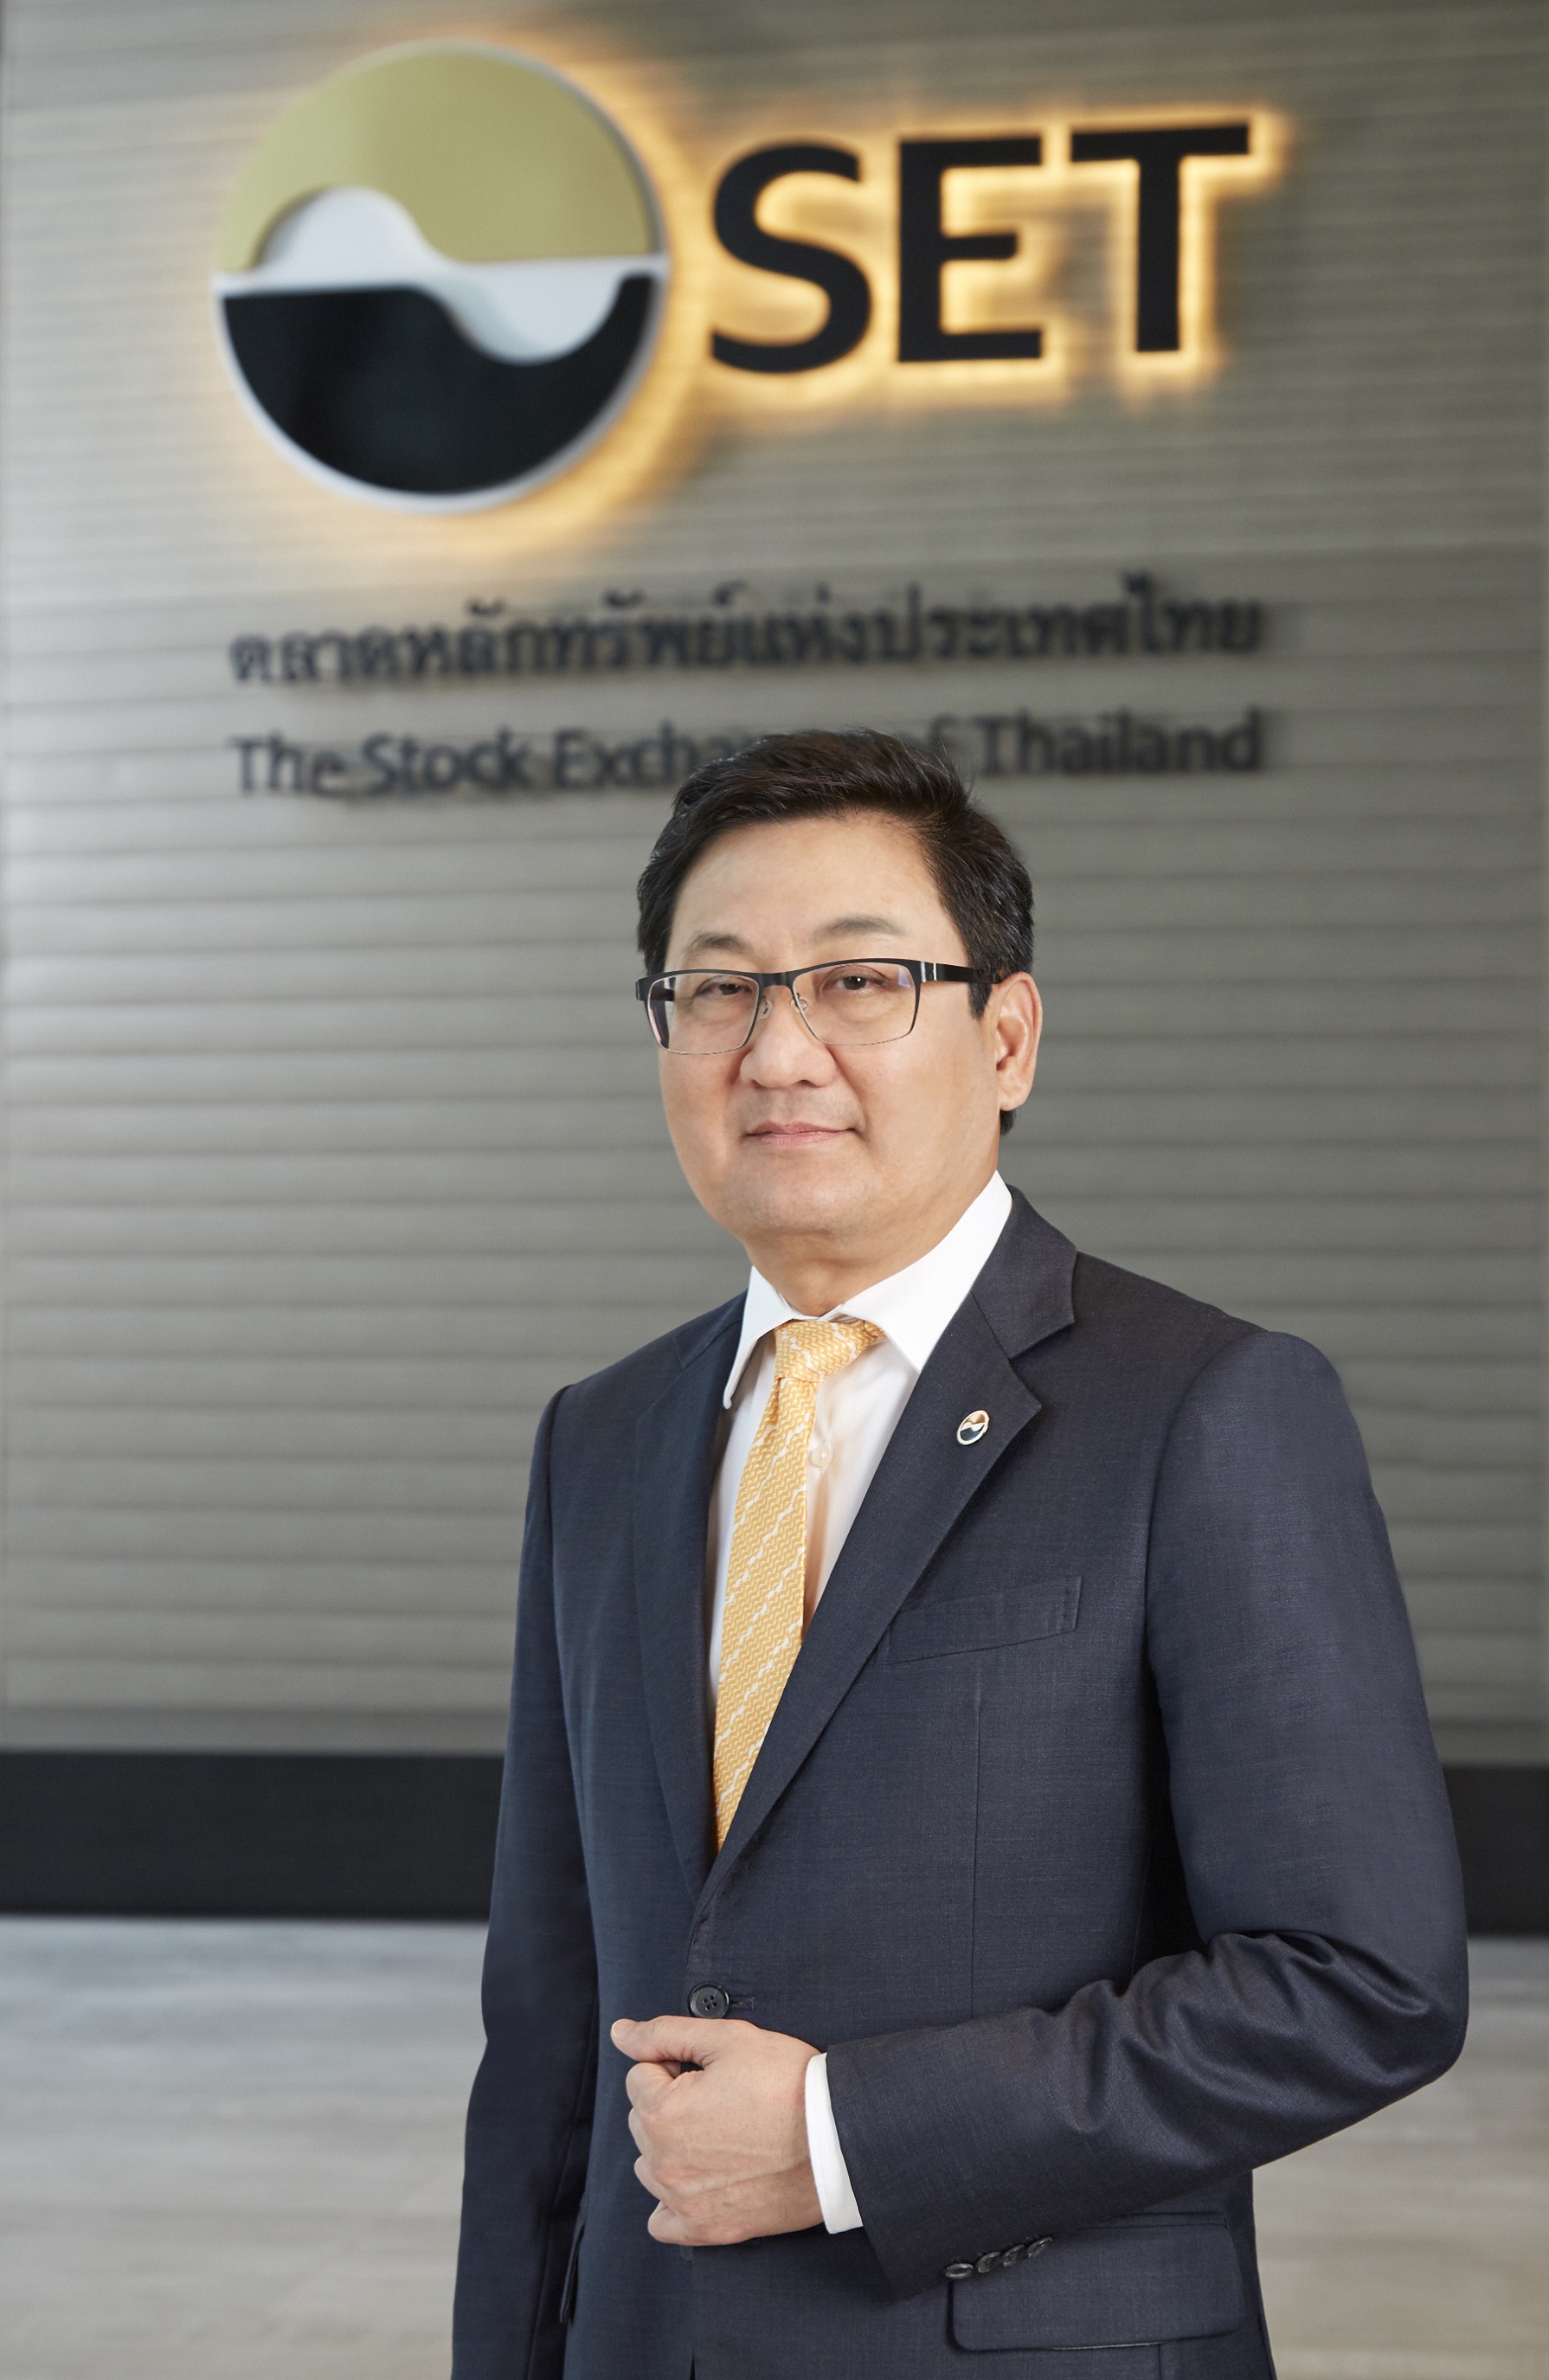 ตลท. ผนึกสภาธุรกิจตลาดทุนไทย  “JOB EXPO THAILAND 2020” 26-28 ก.ย. นี้”